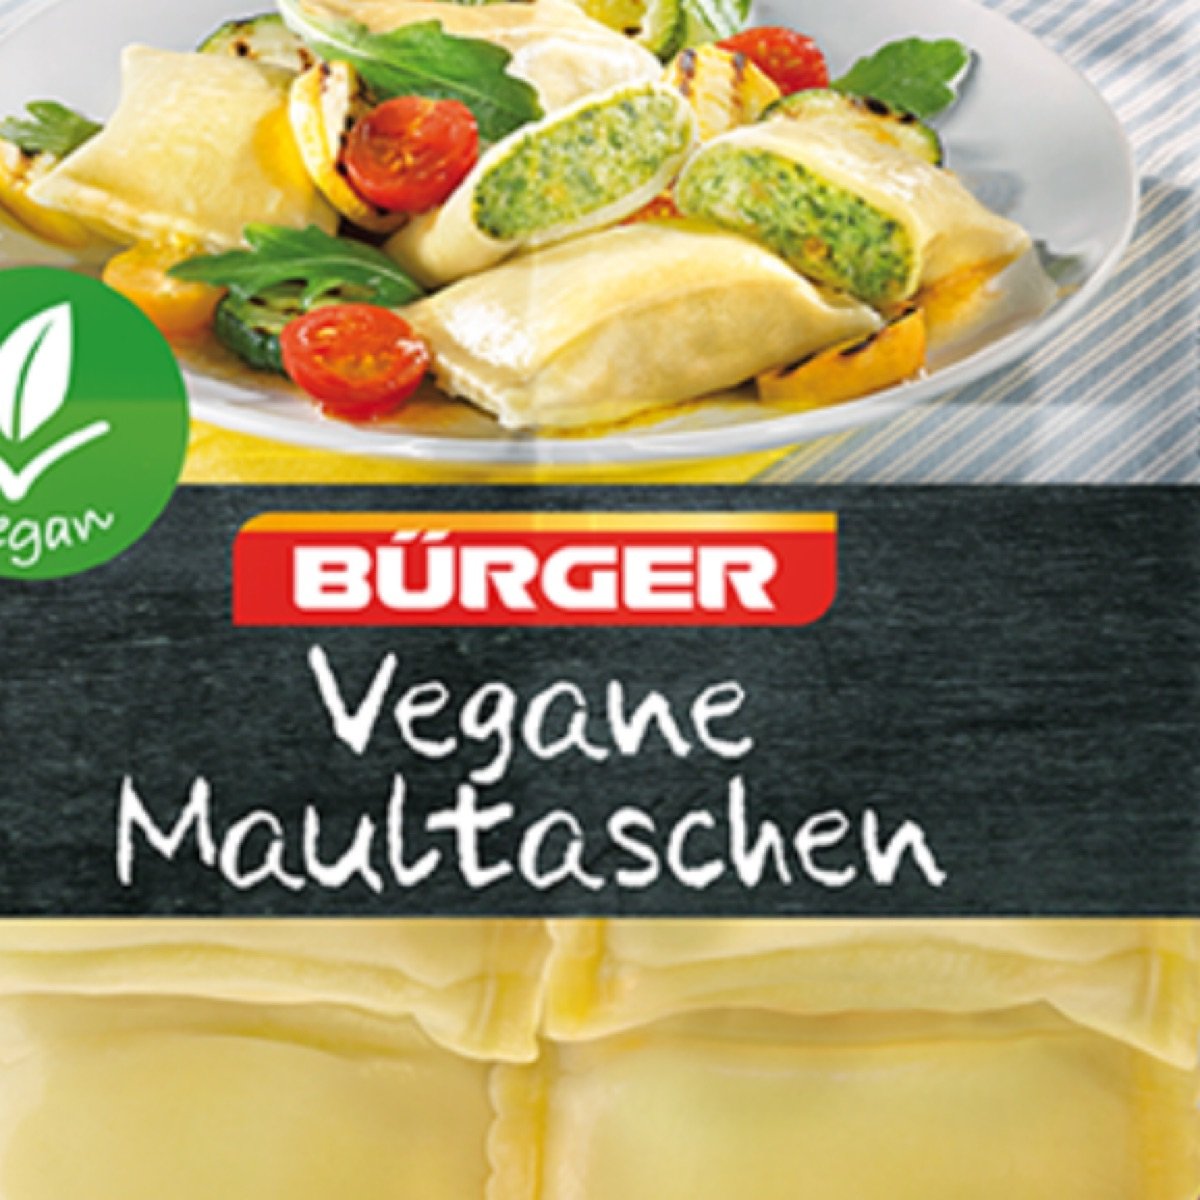 Bürger Maultaschen Vegan Review | abillion